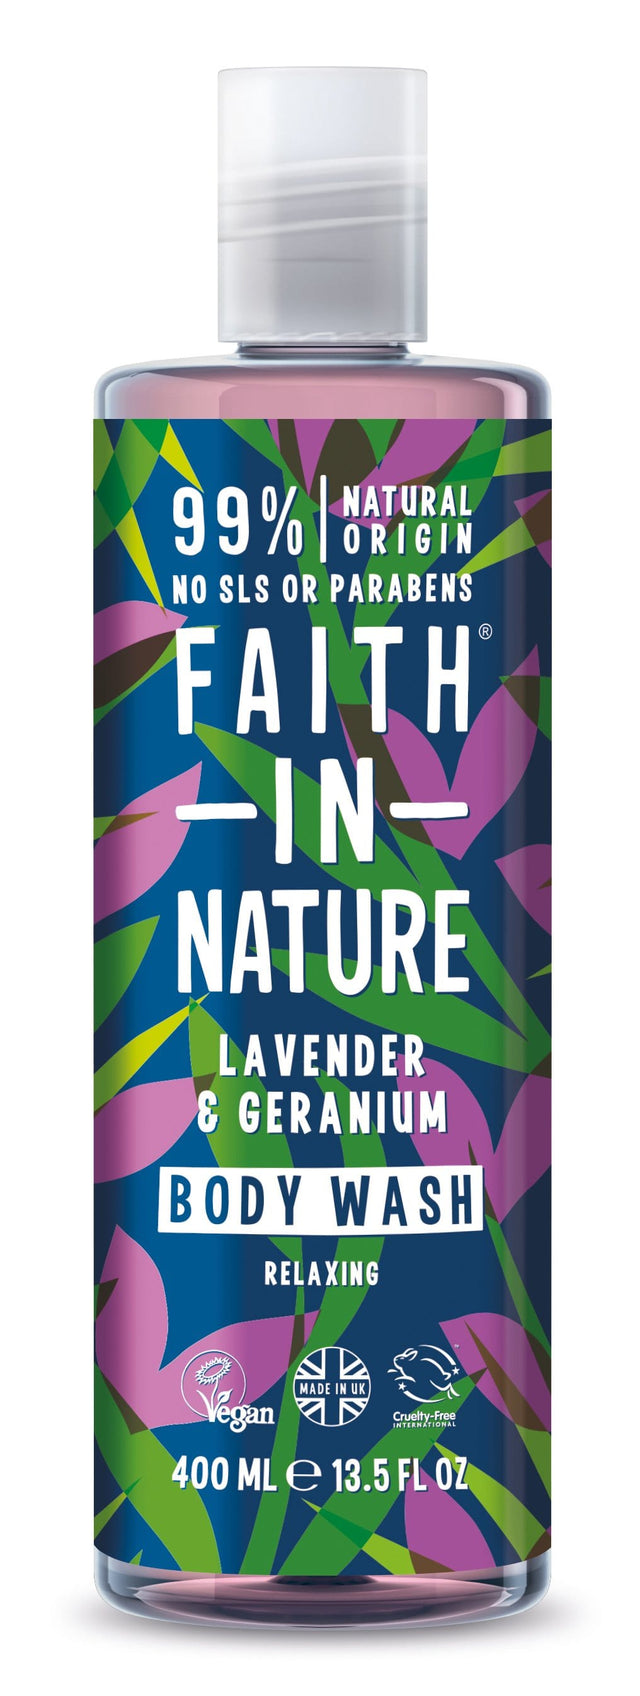 Faith in Nature Lavender & Geranium Body Wash, 400ml